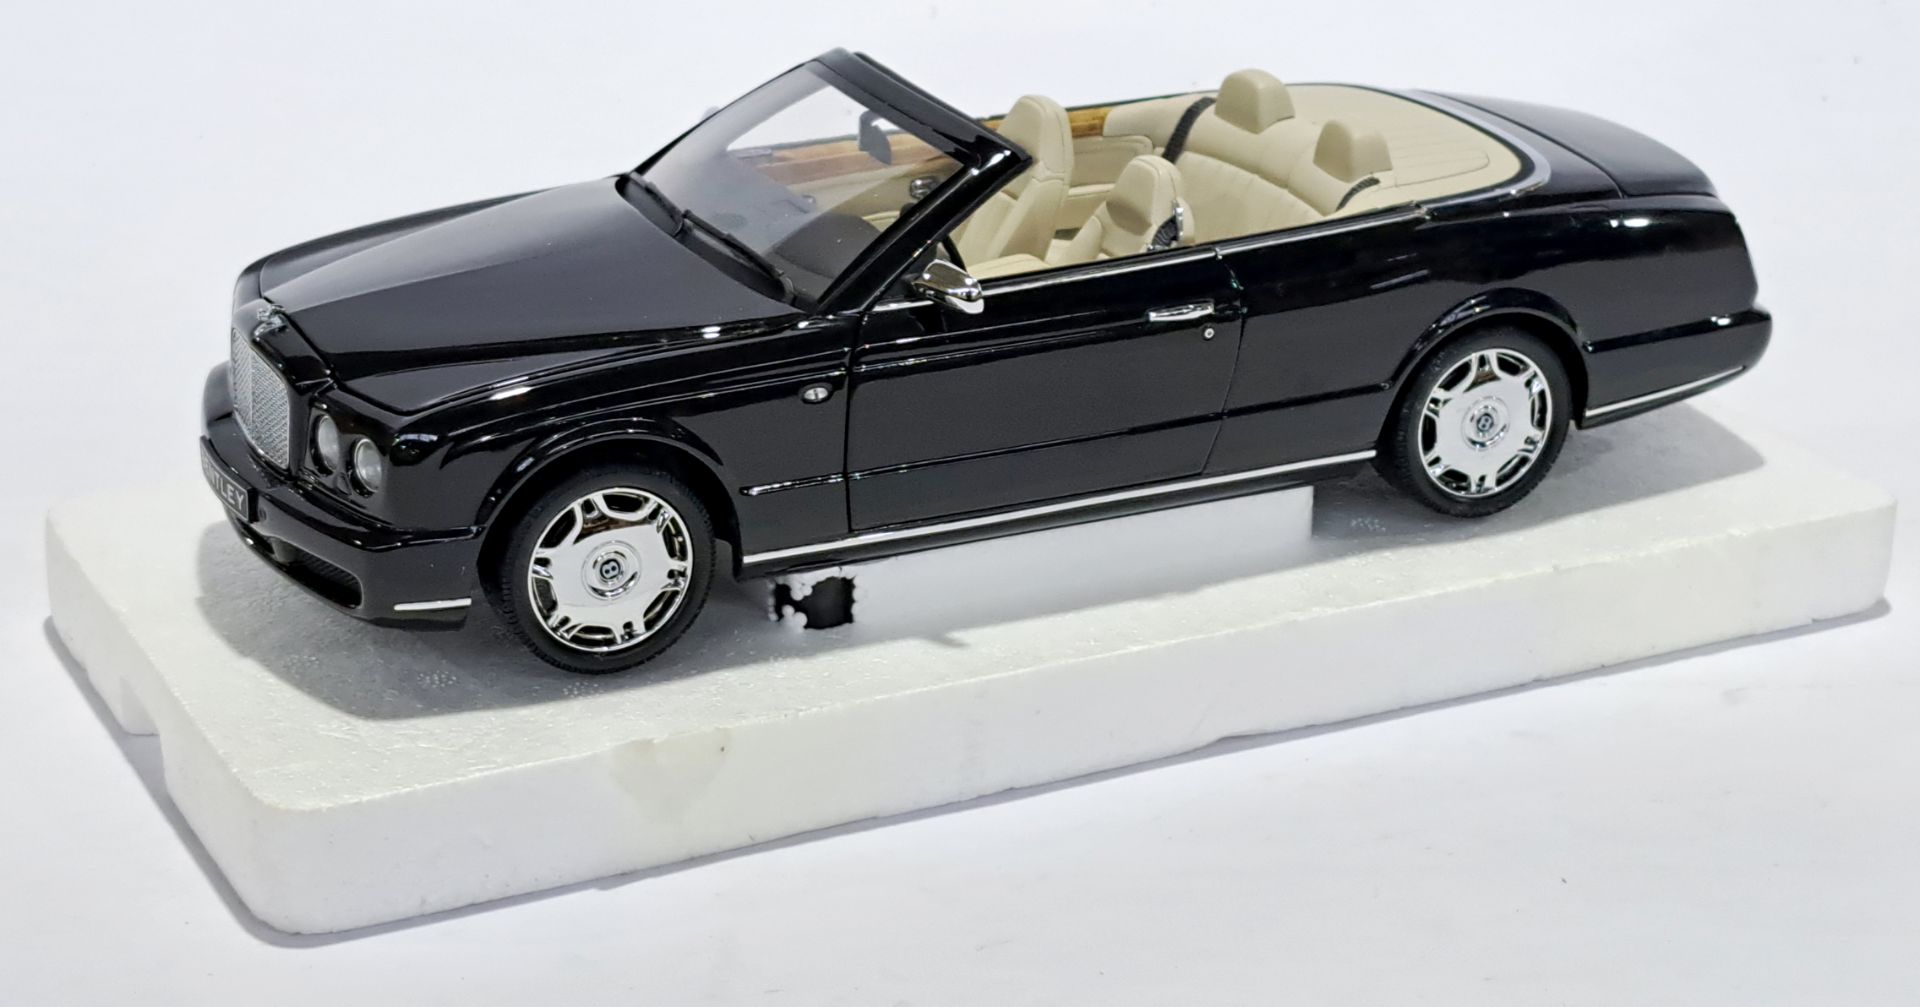 Minichamps (Paul's Model Art) 1:18 scale 139500 Bentley Azure 2006 - Bild 2 aus 3